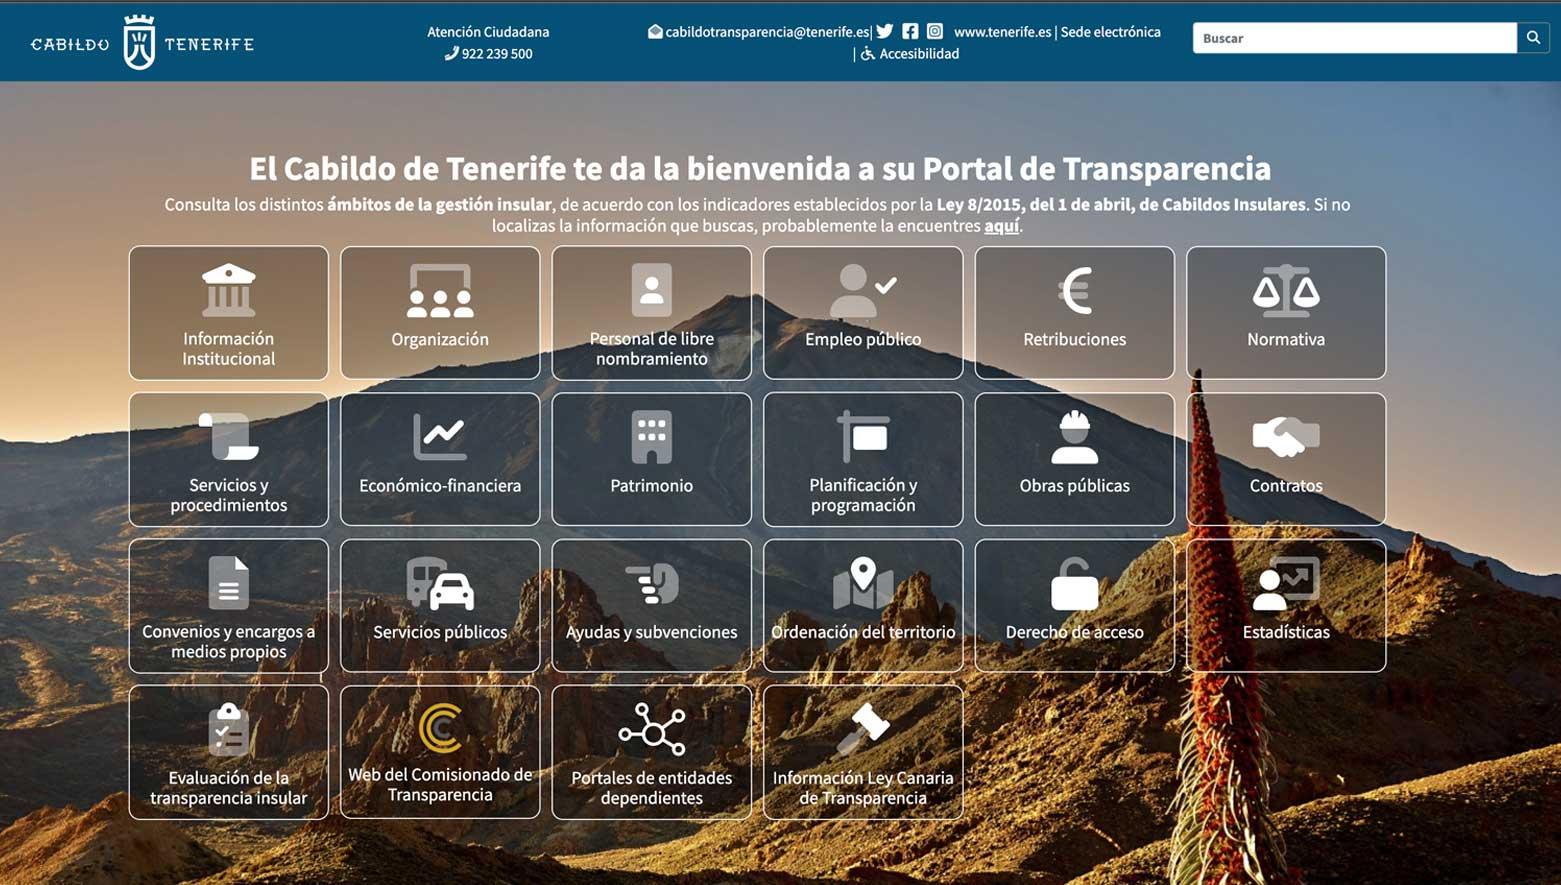 Ejemplo portal de transparencia